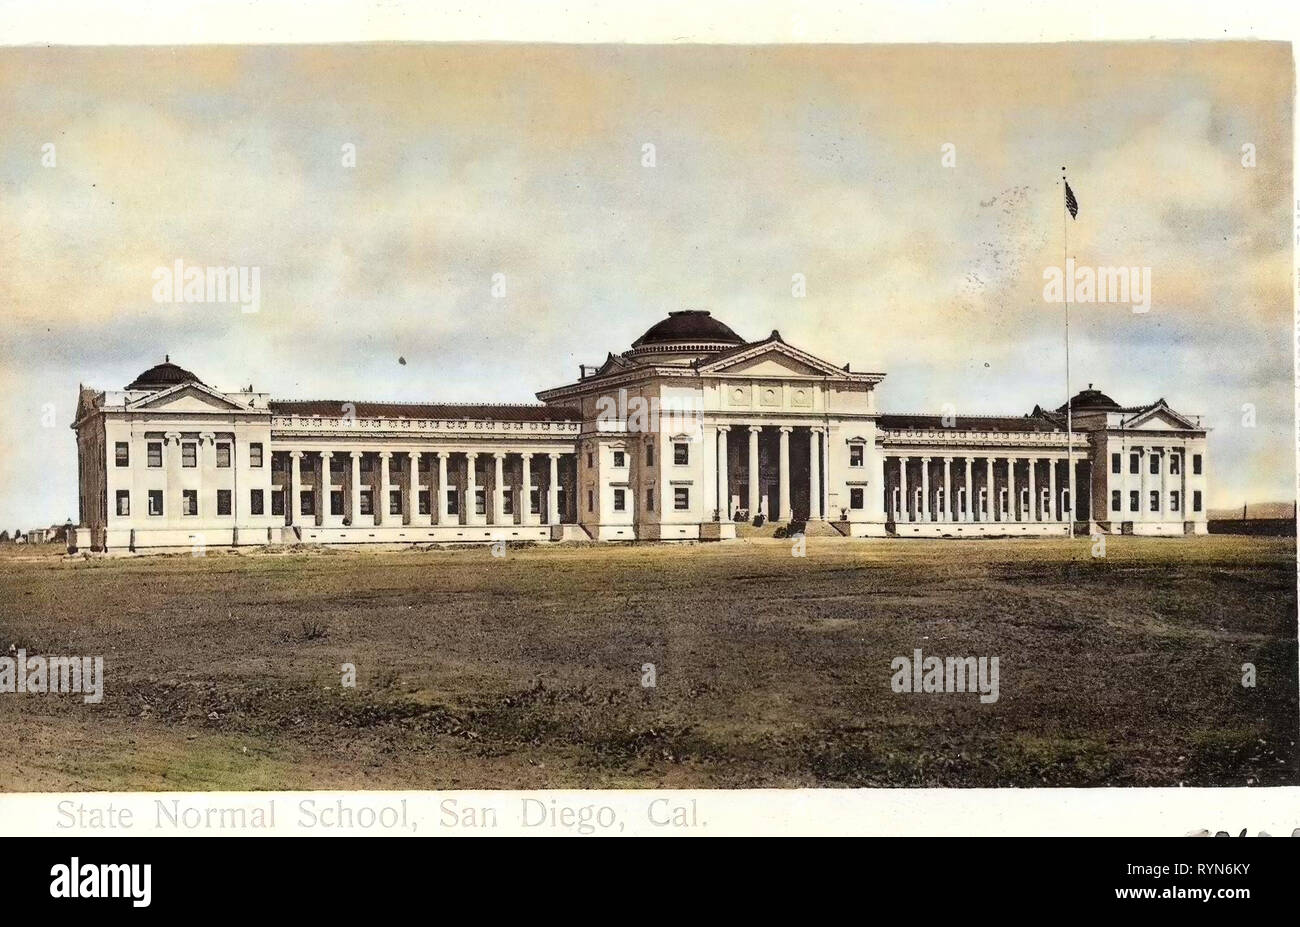 San Diego normale Schule, 1905, Kalifornien, San Diego, State Normal School, Cal., Vereinigte Staaten von Amerika Stockfoto